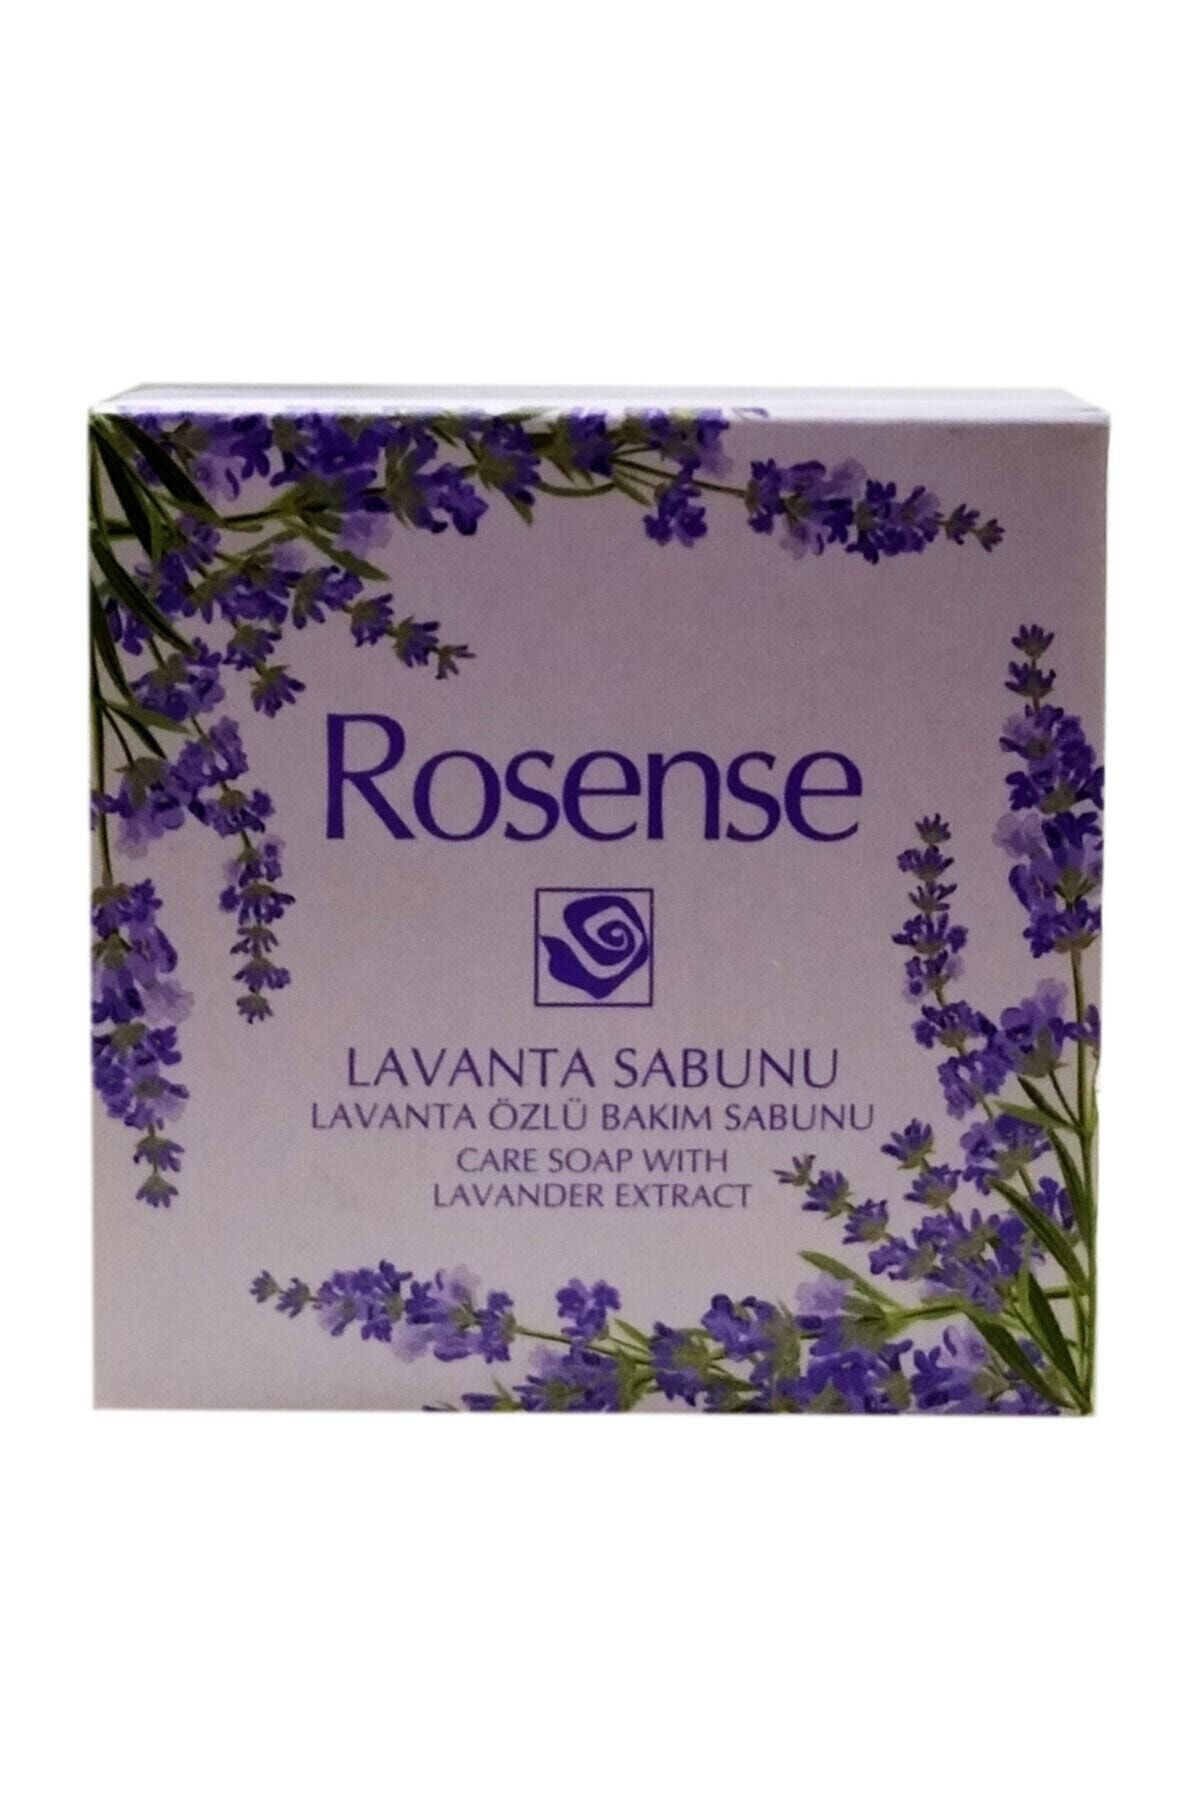 Rosense Lavanta Sabunu 100 gr